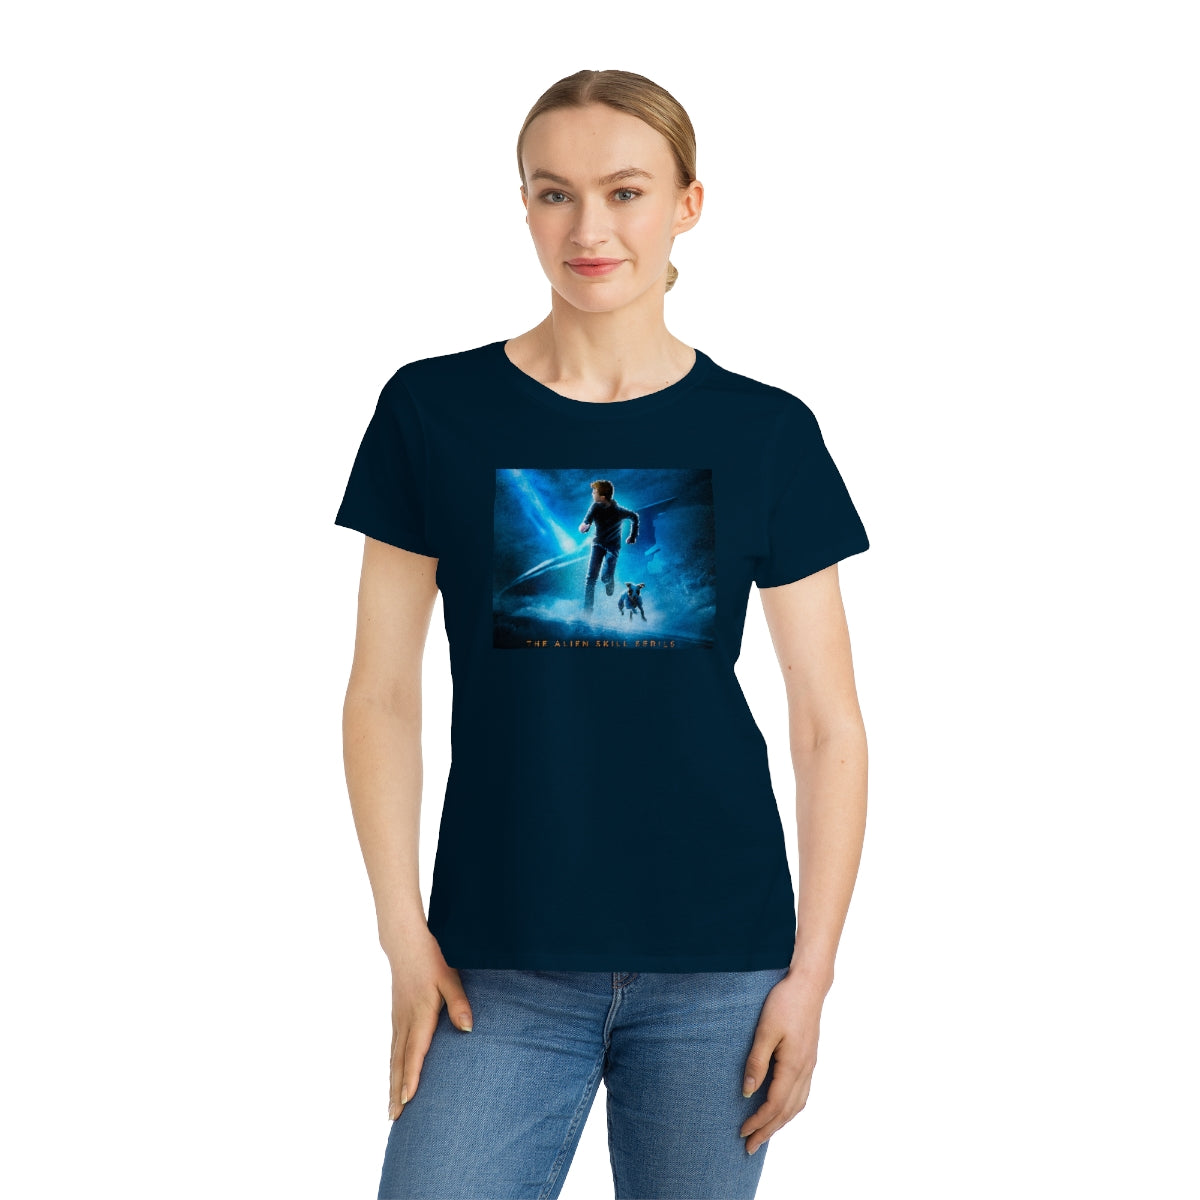 Organic Teen Girl & Women's Classic T-Shirt - Ben Archer